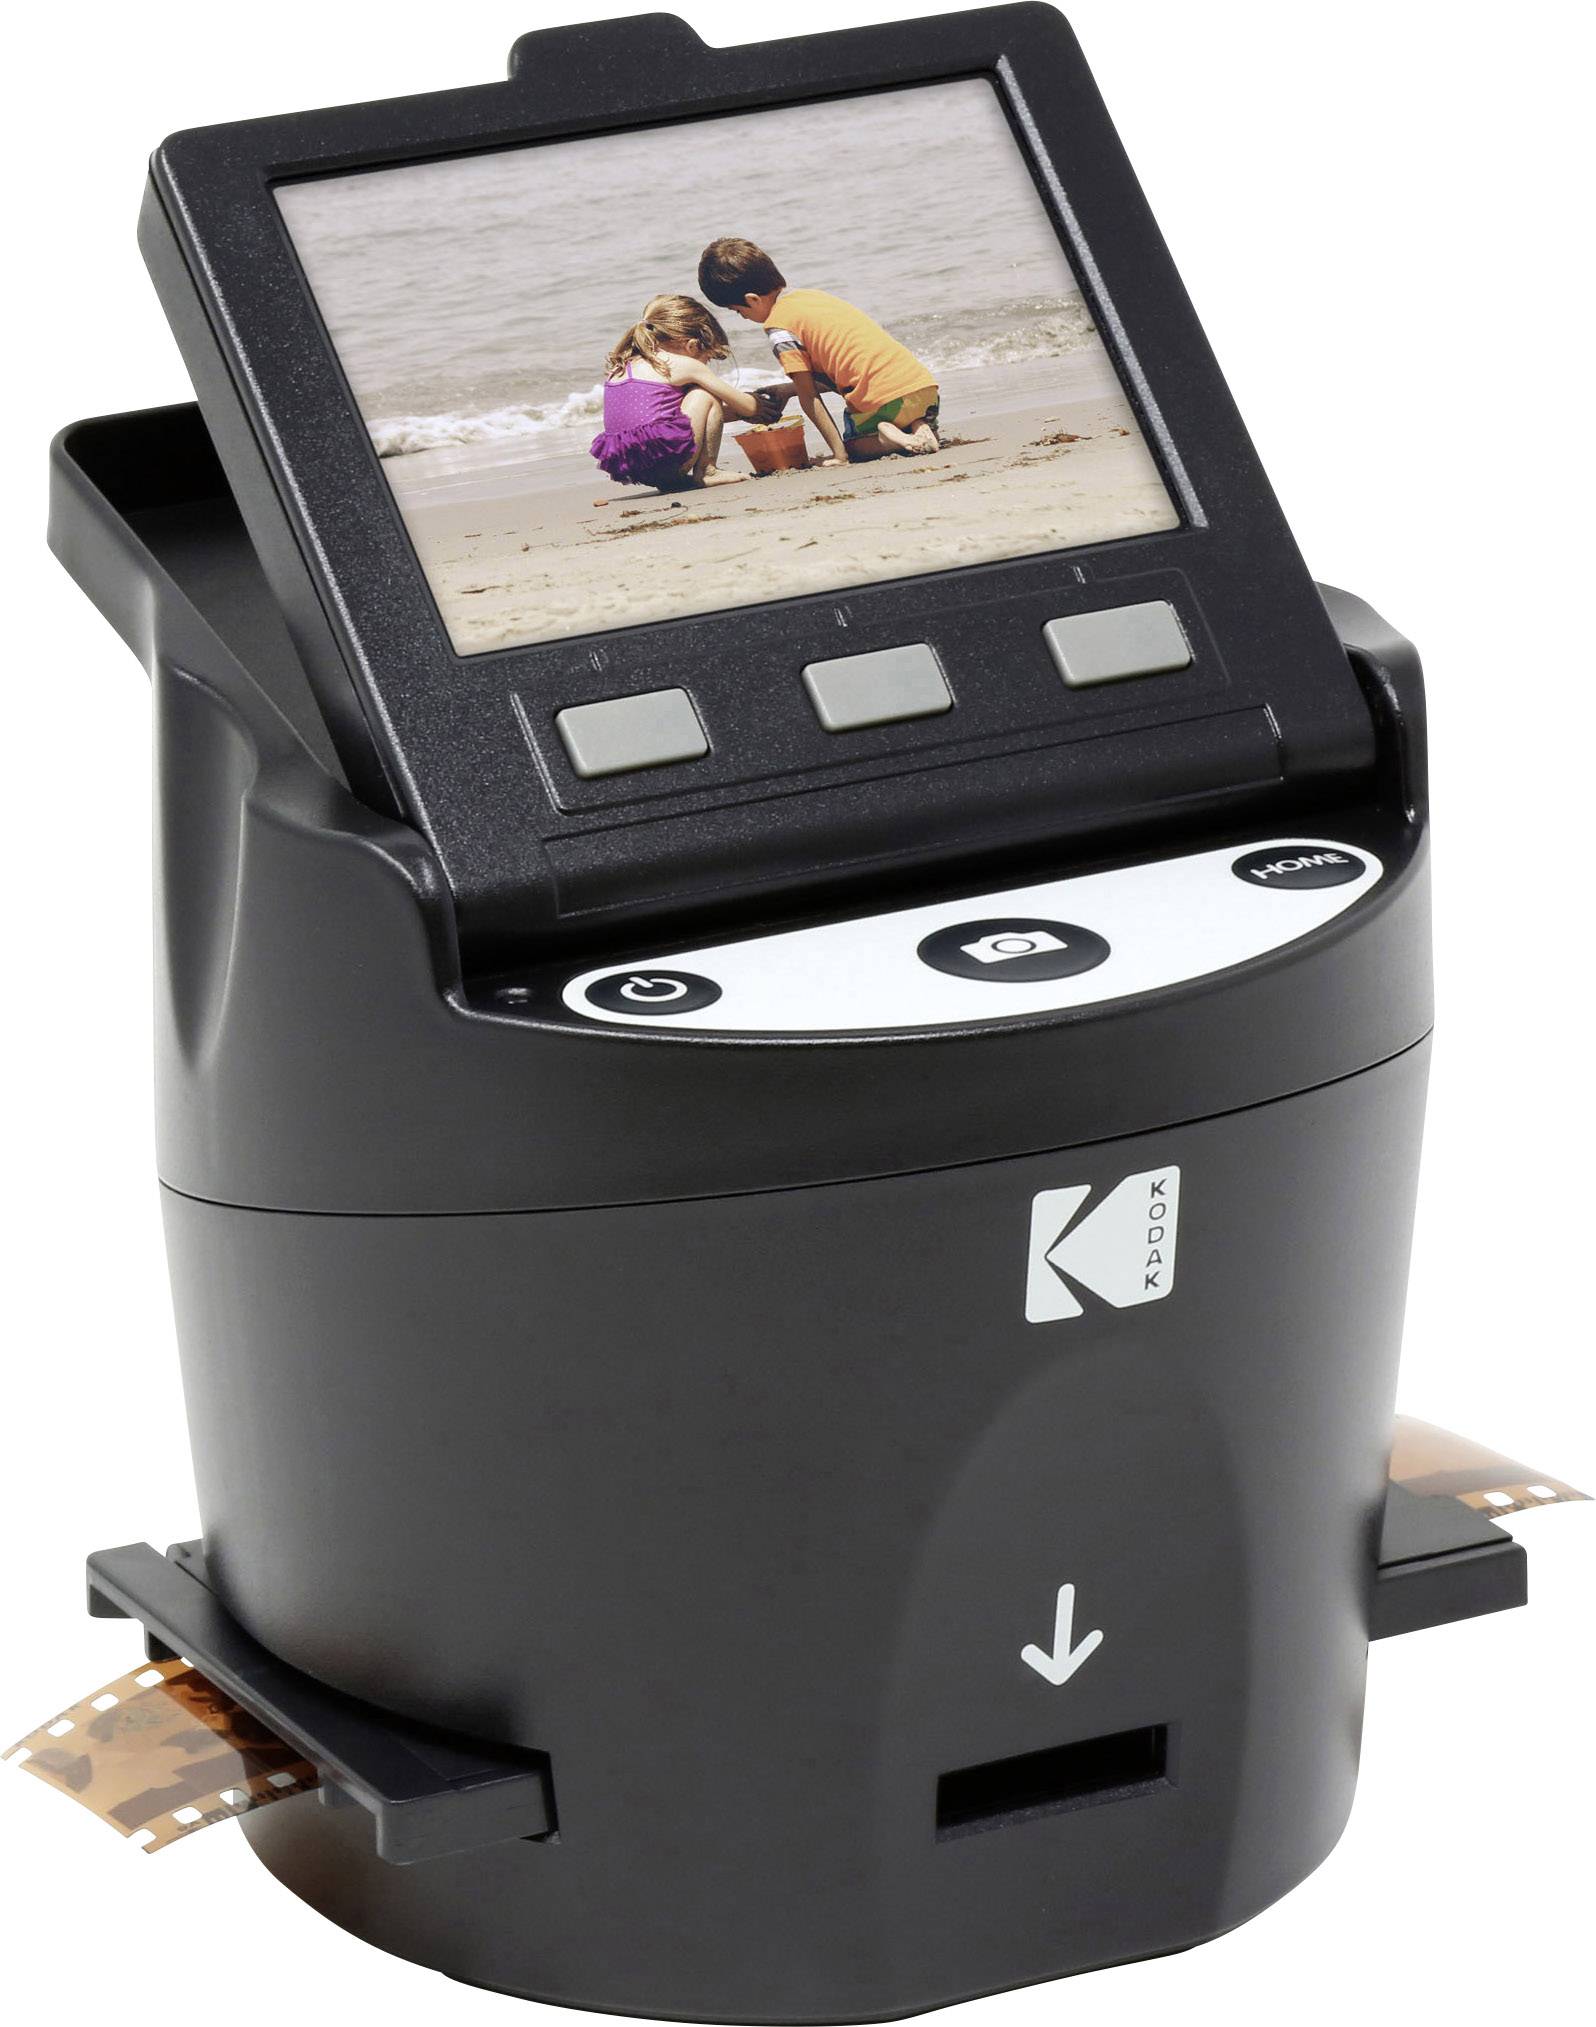 Сканер пленок купить. Сканер для фотопленки 35 мм. Сканер пленок негативов слайдов 35 мм. Сканер для оцифровки негативов 35 мм. Кодак сканер фотопленок.